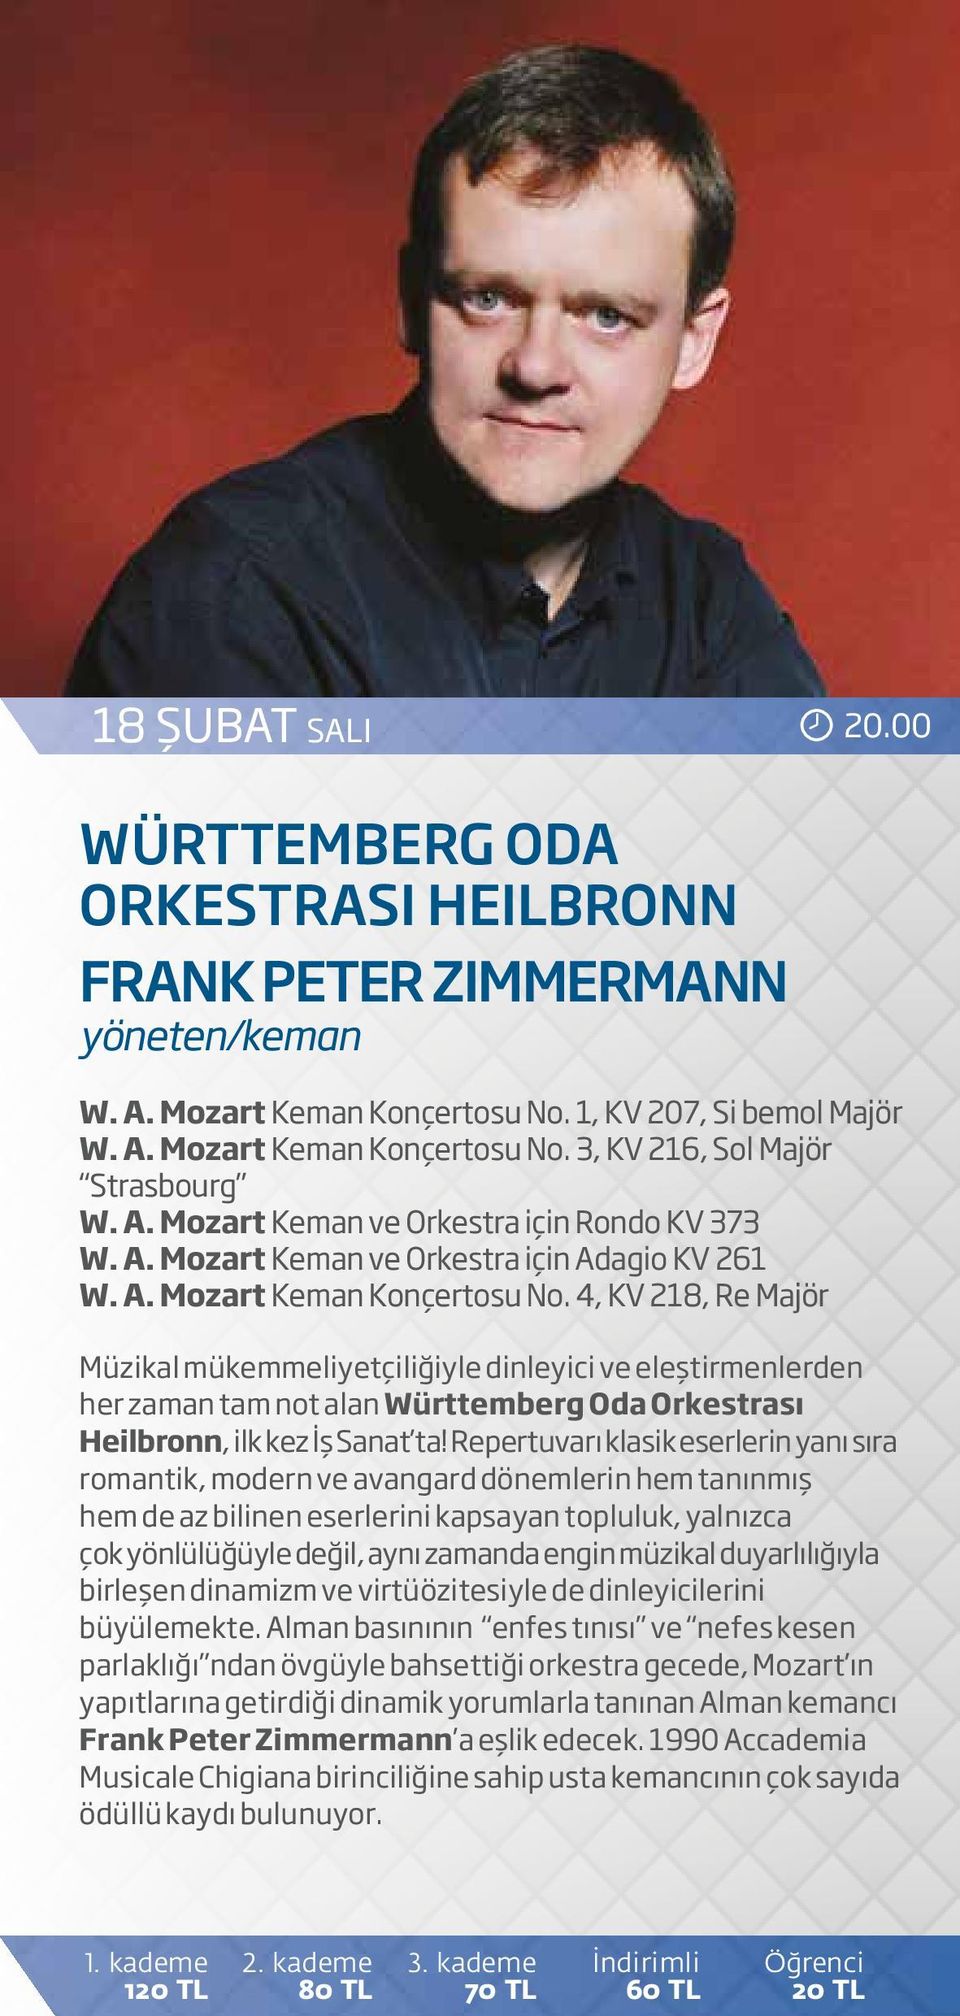 4, KV 218, Re Majör Müzikal mükemmeliyetçiliğiyle dinleyici ve eleştirmenlerden her zaman tam not alan Württemberg Oda Orkestrası Heilbronn, ilk kez İş Sanat ta!